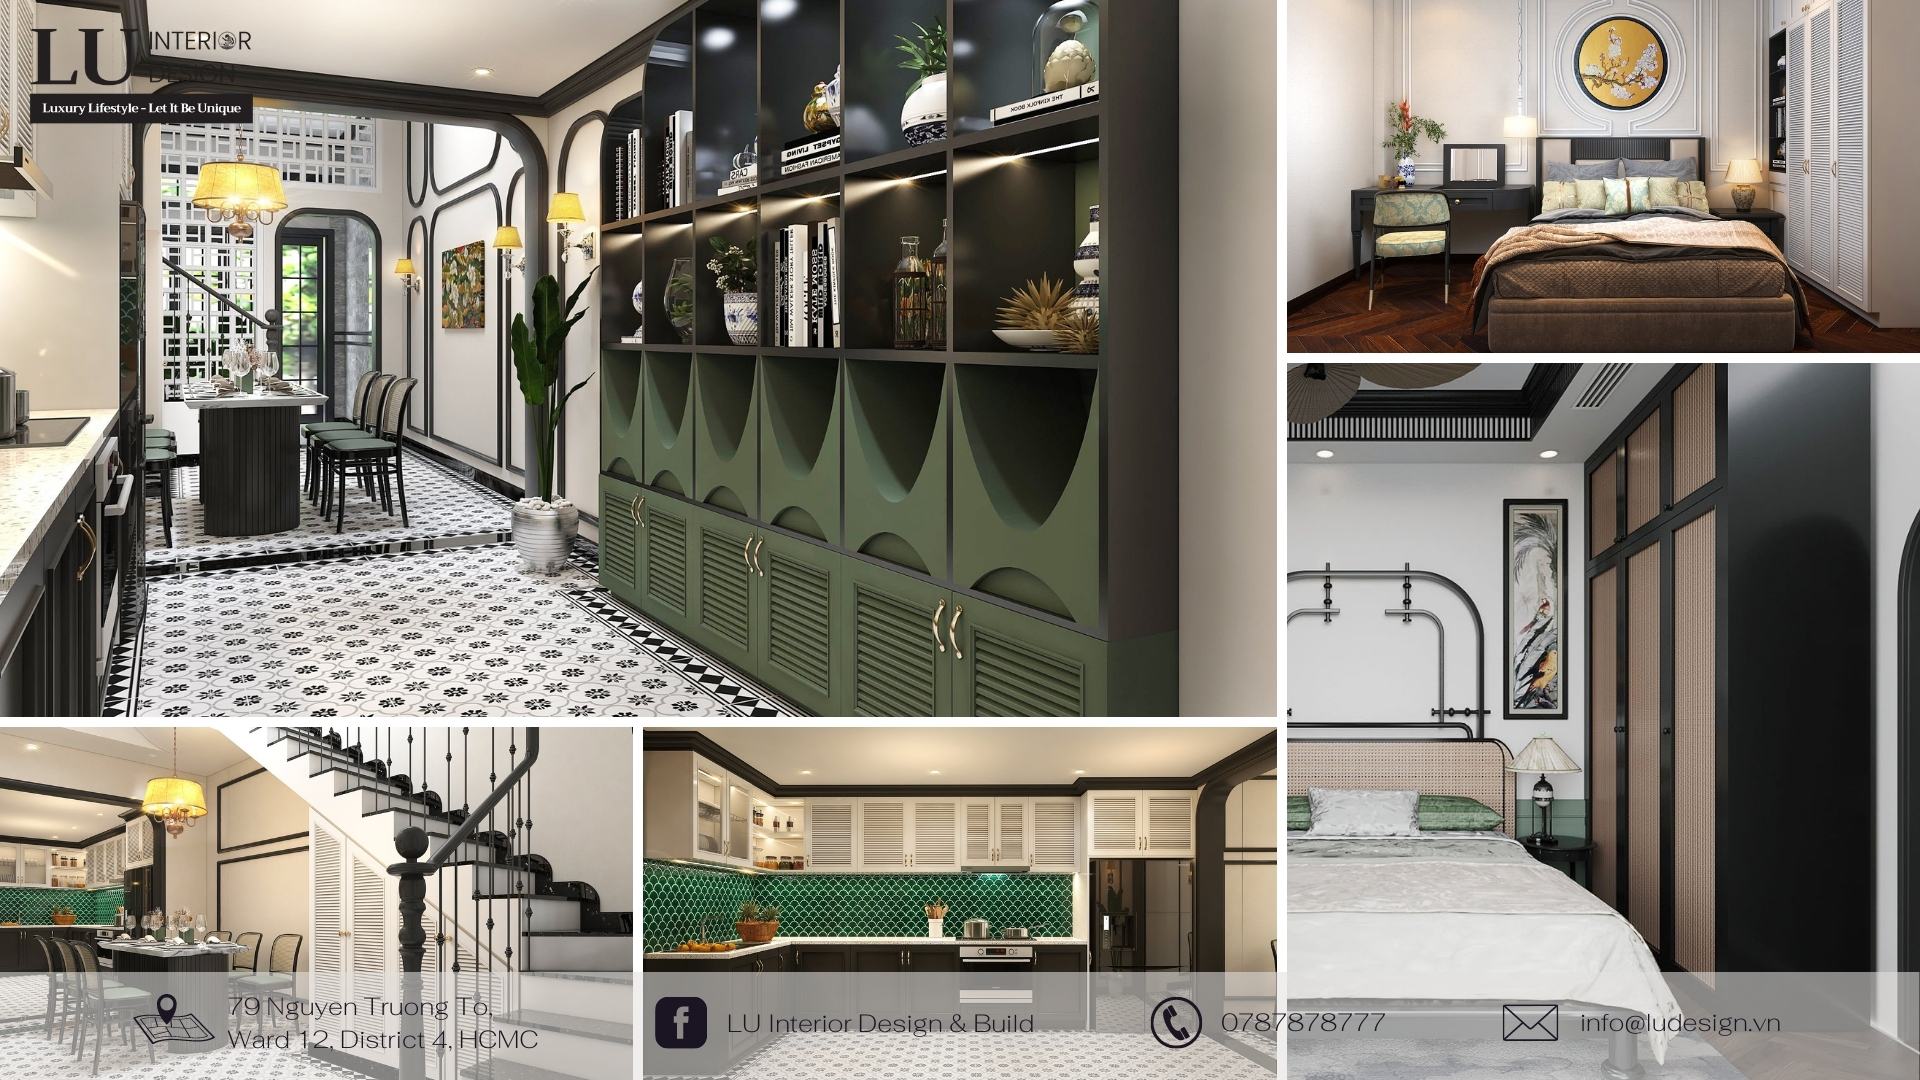 Dự án thiết kế và thi công nội thất nhà phố Quận 10 với phong cách Indochine hoài cổ - gần gũi | LU Design thực hiện.